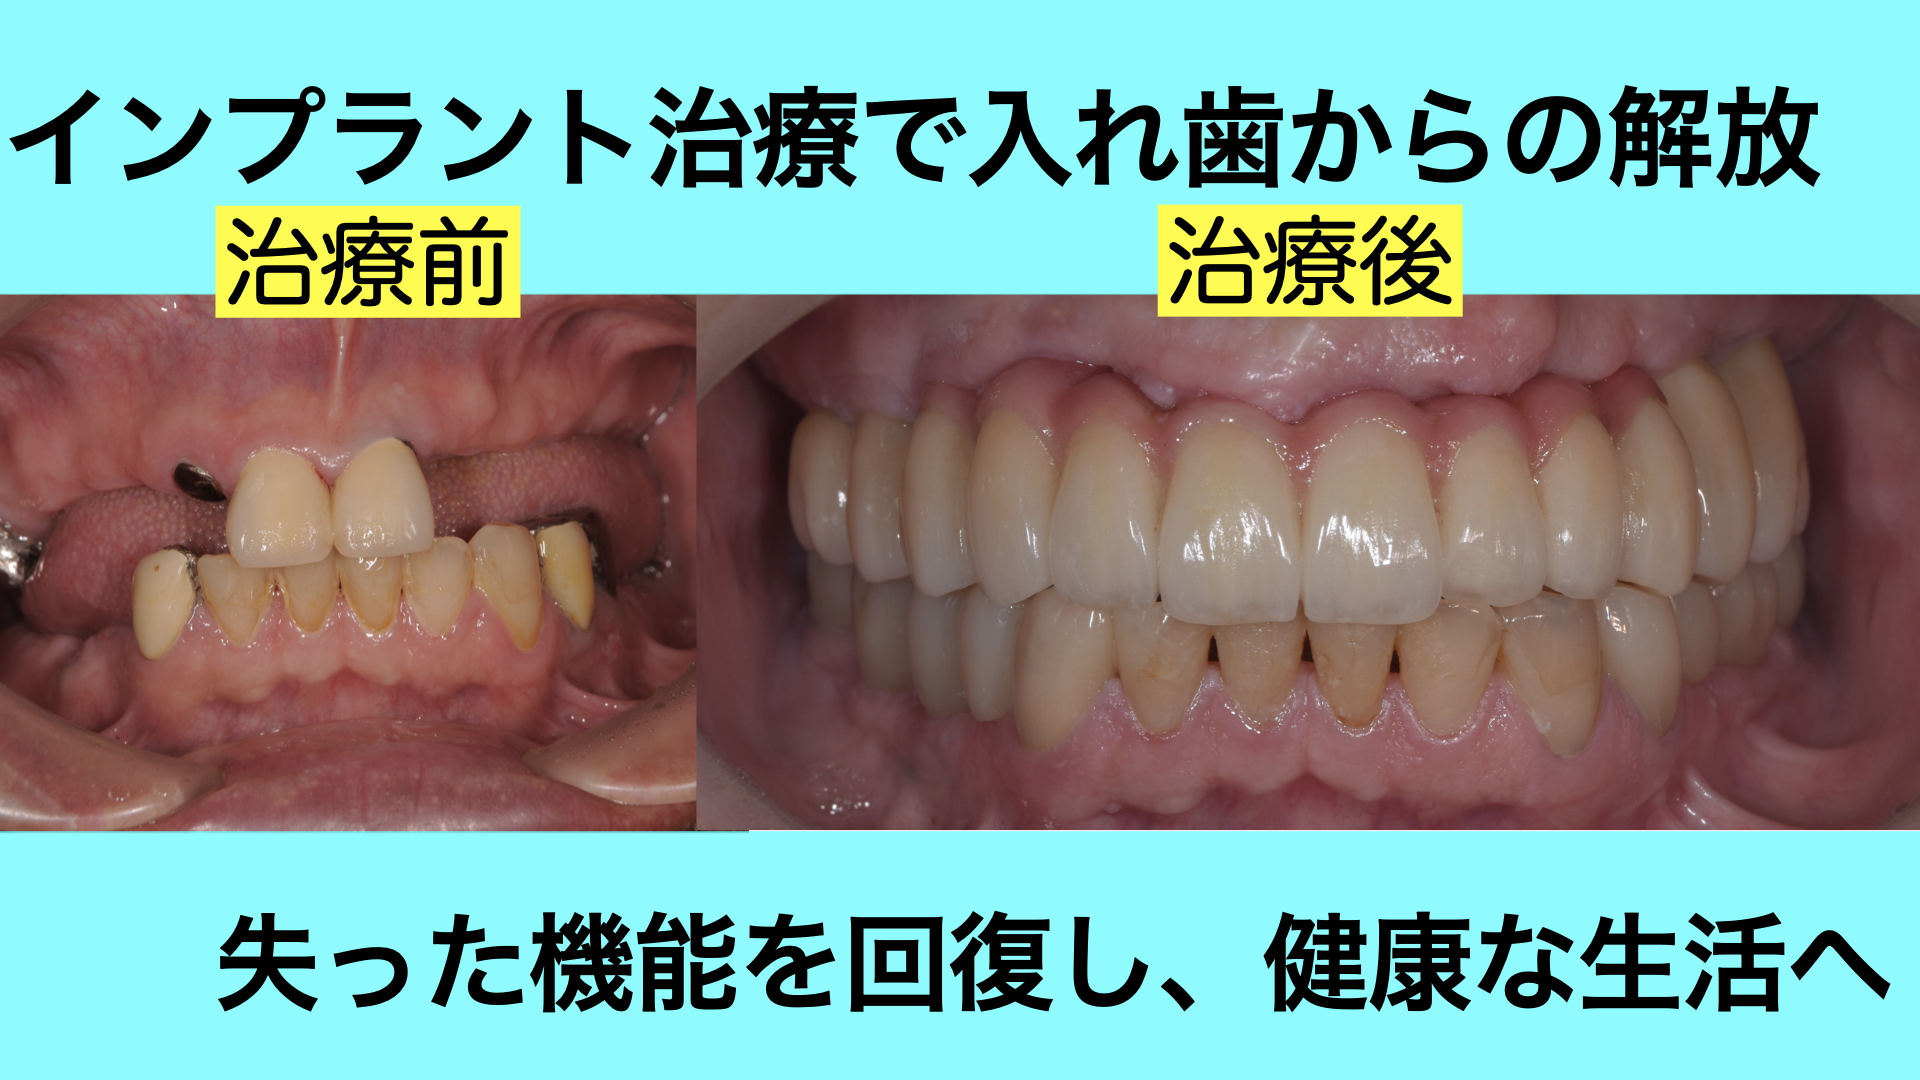 歯がほとんど無く、噛めない状態をインプラント治療で改善した症例